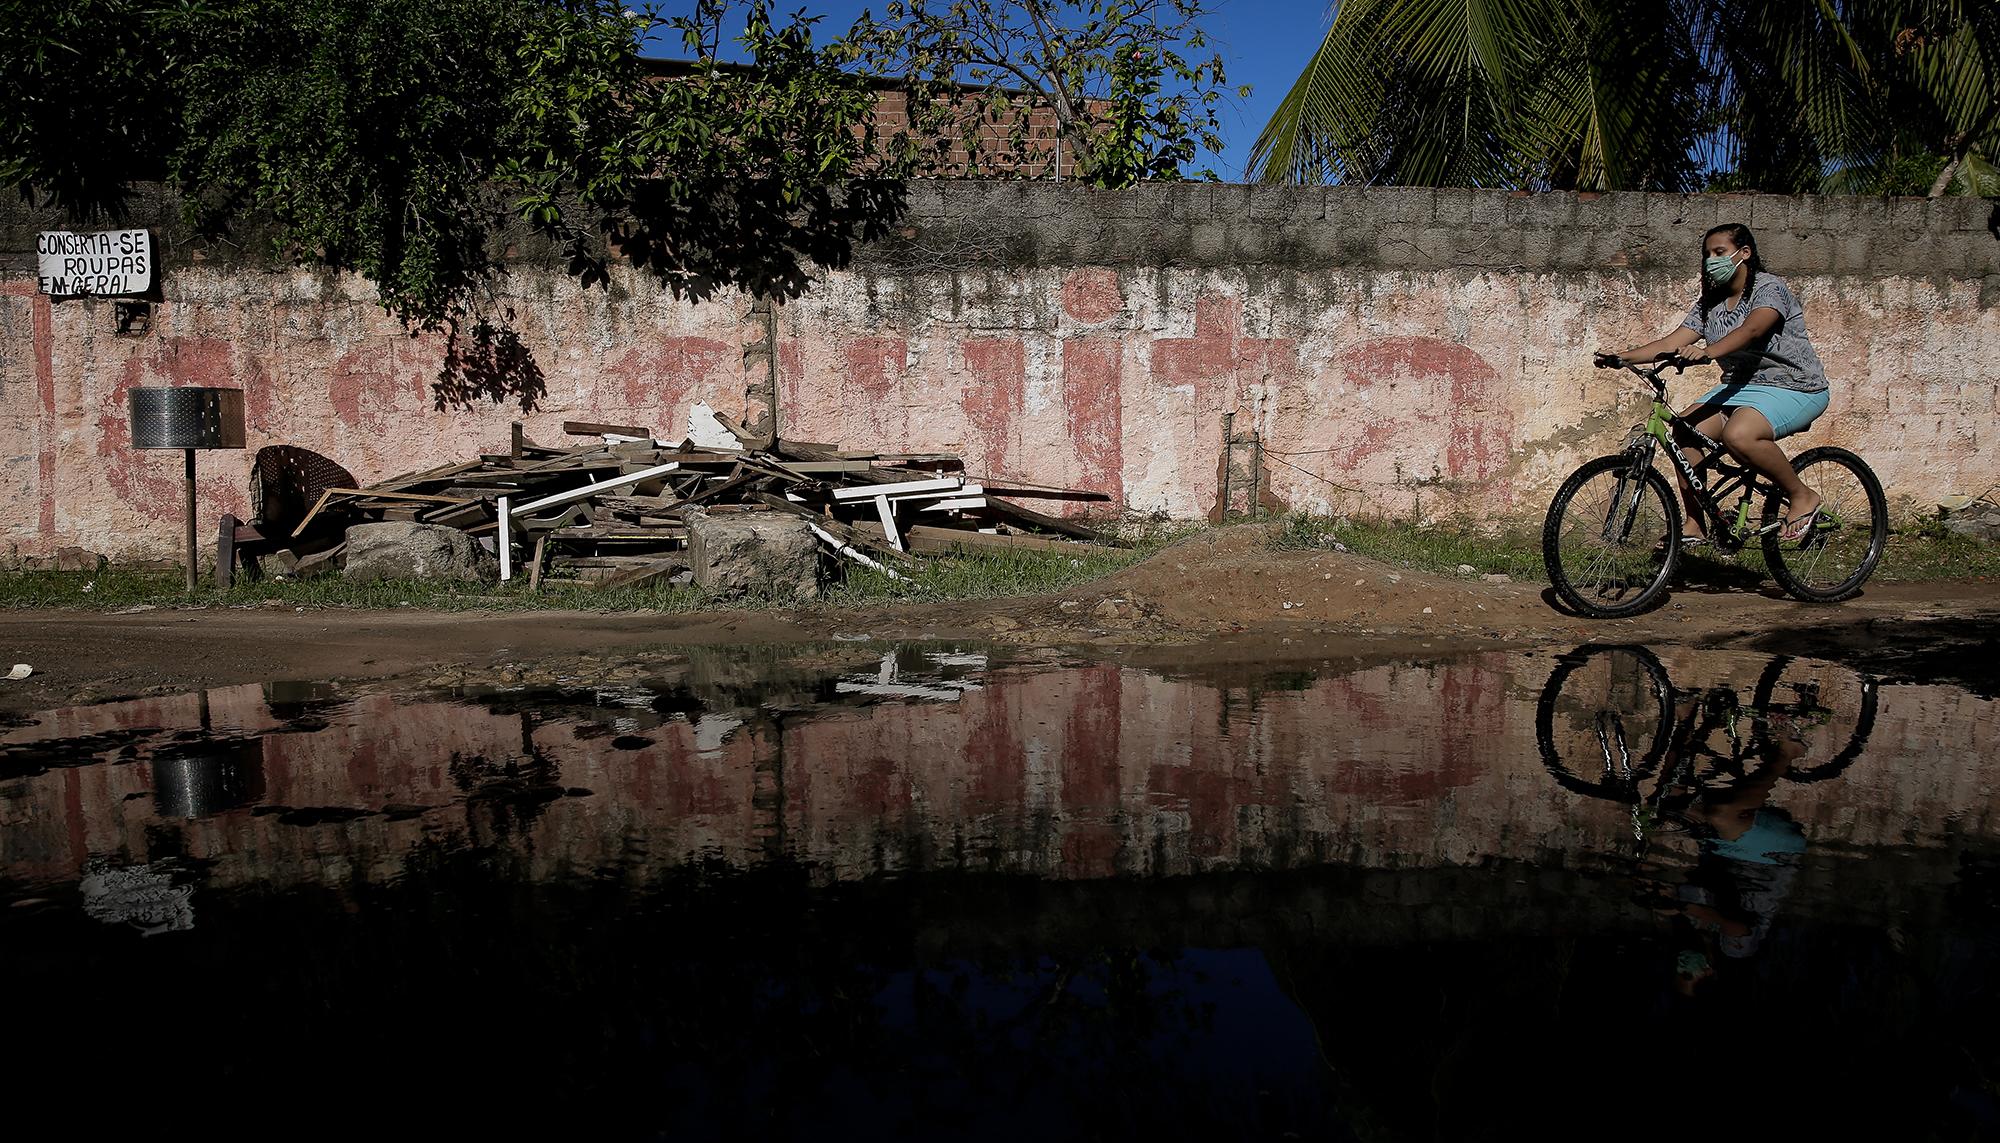 Las áreas urbanas más pobres de Brasil son las que más están sufriendo el impacto del covid-19.  Foto: Brenda Alcântara / Oxfam Brasil